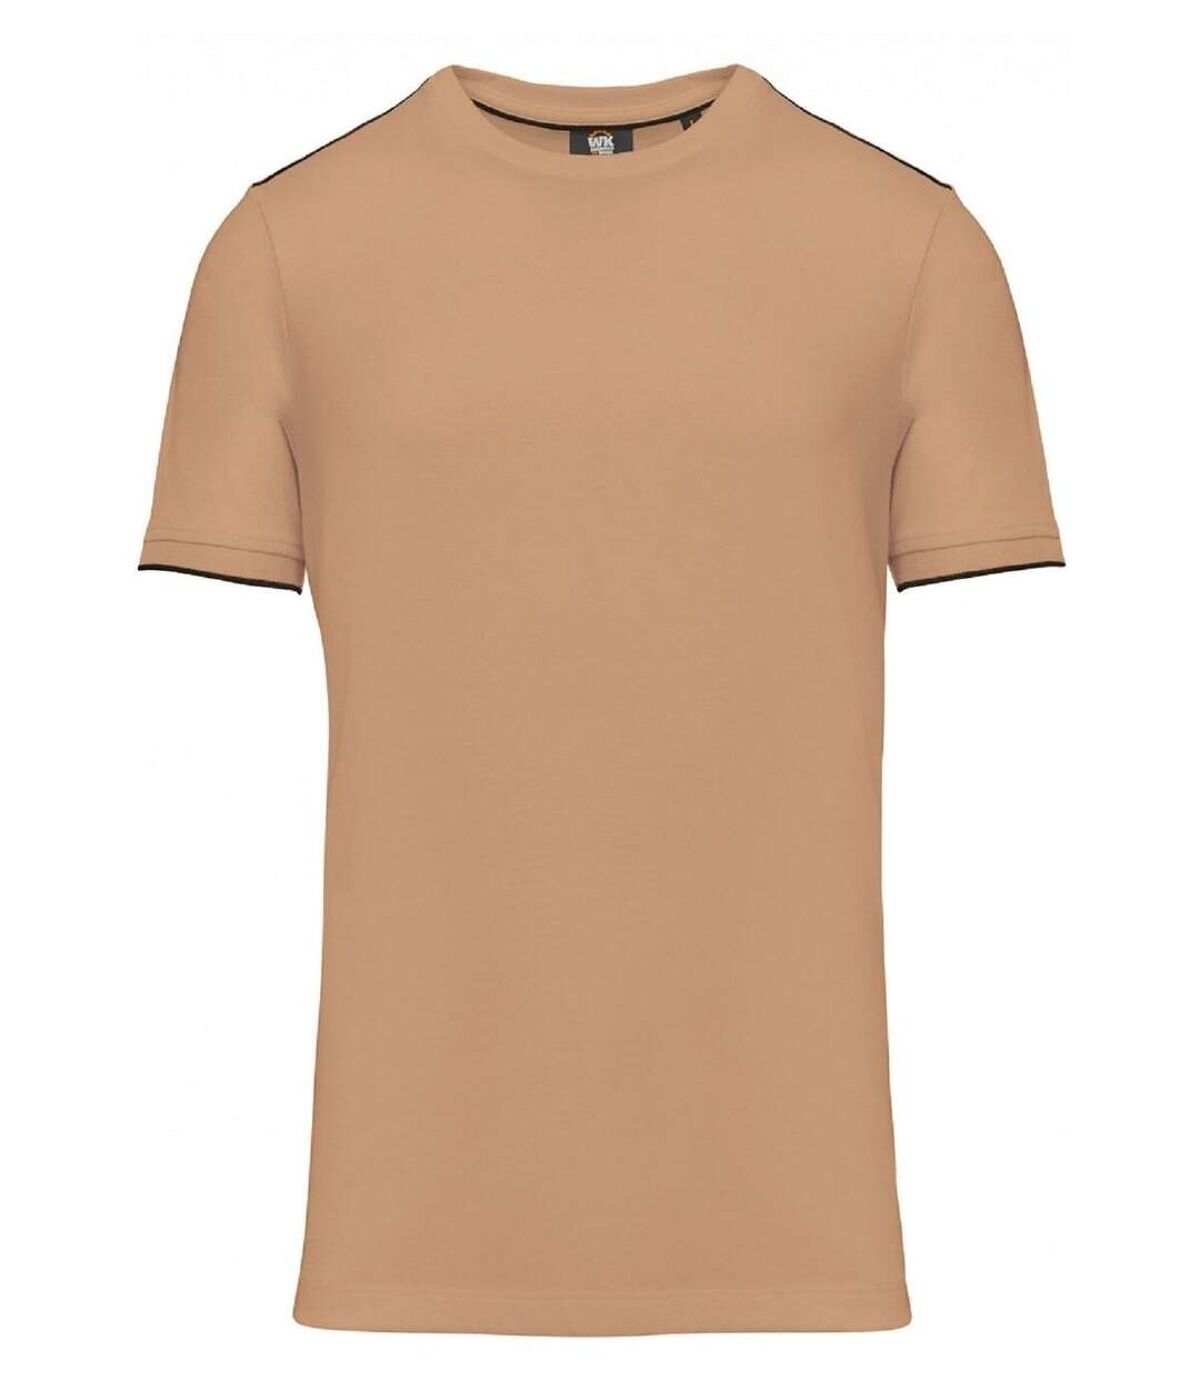 T-shirt professionnel DayToDay pour homme - WK3020 - beige camel et noir